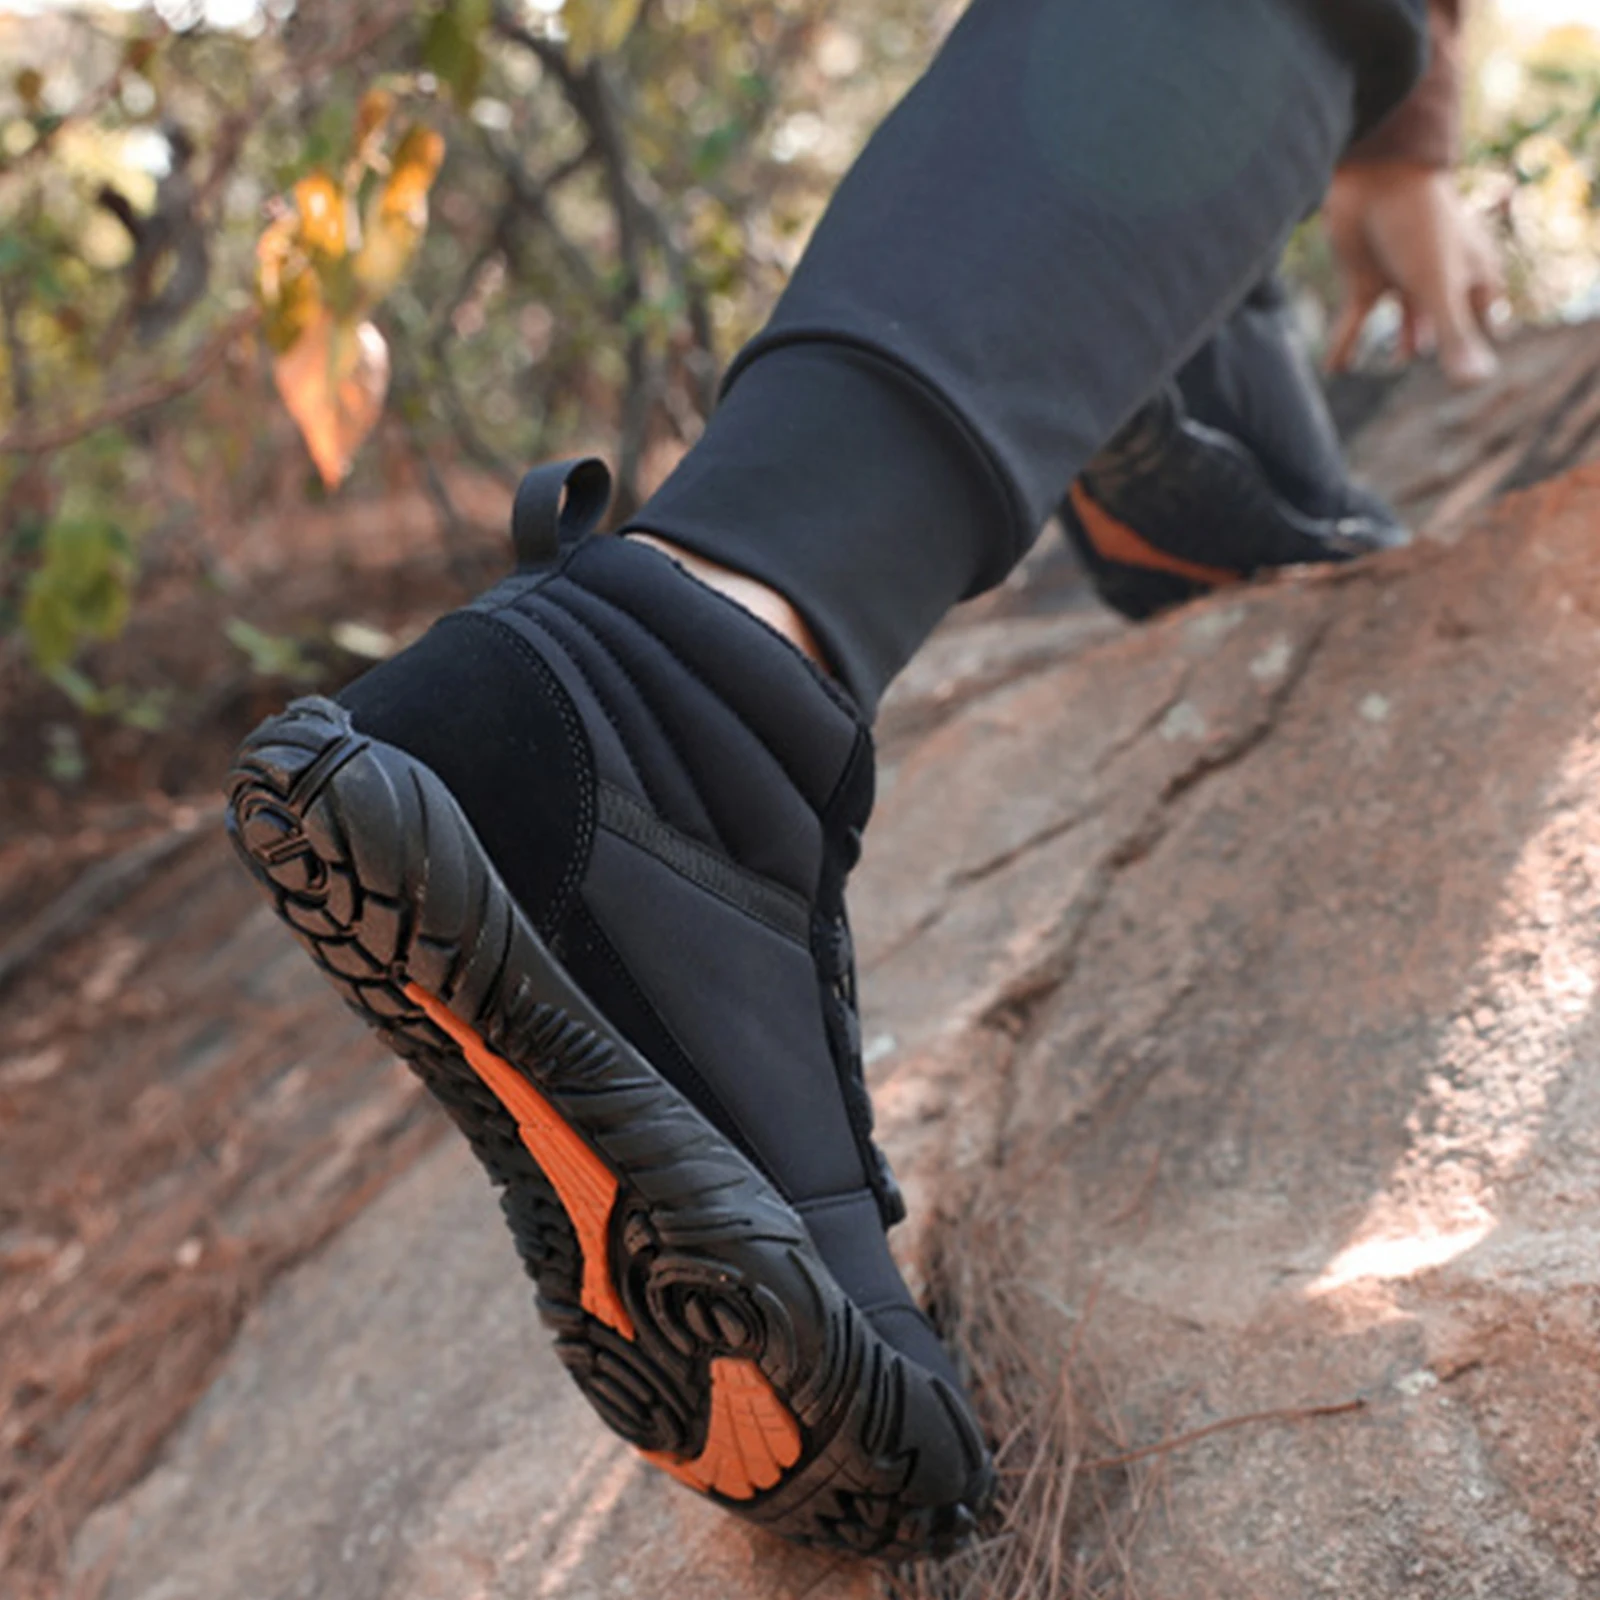 Kış Sıcak Koşu Sneakers Kadın Erkek Kauçuk Koşu Yalınayak Ayakkabı Su Geçirmez Kaymaz Nefes Trekking Tırmanma için - 4